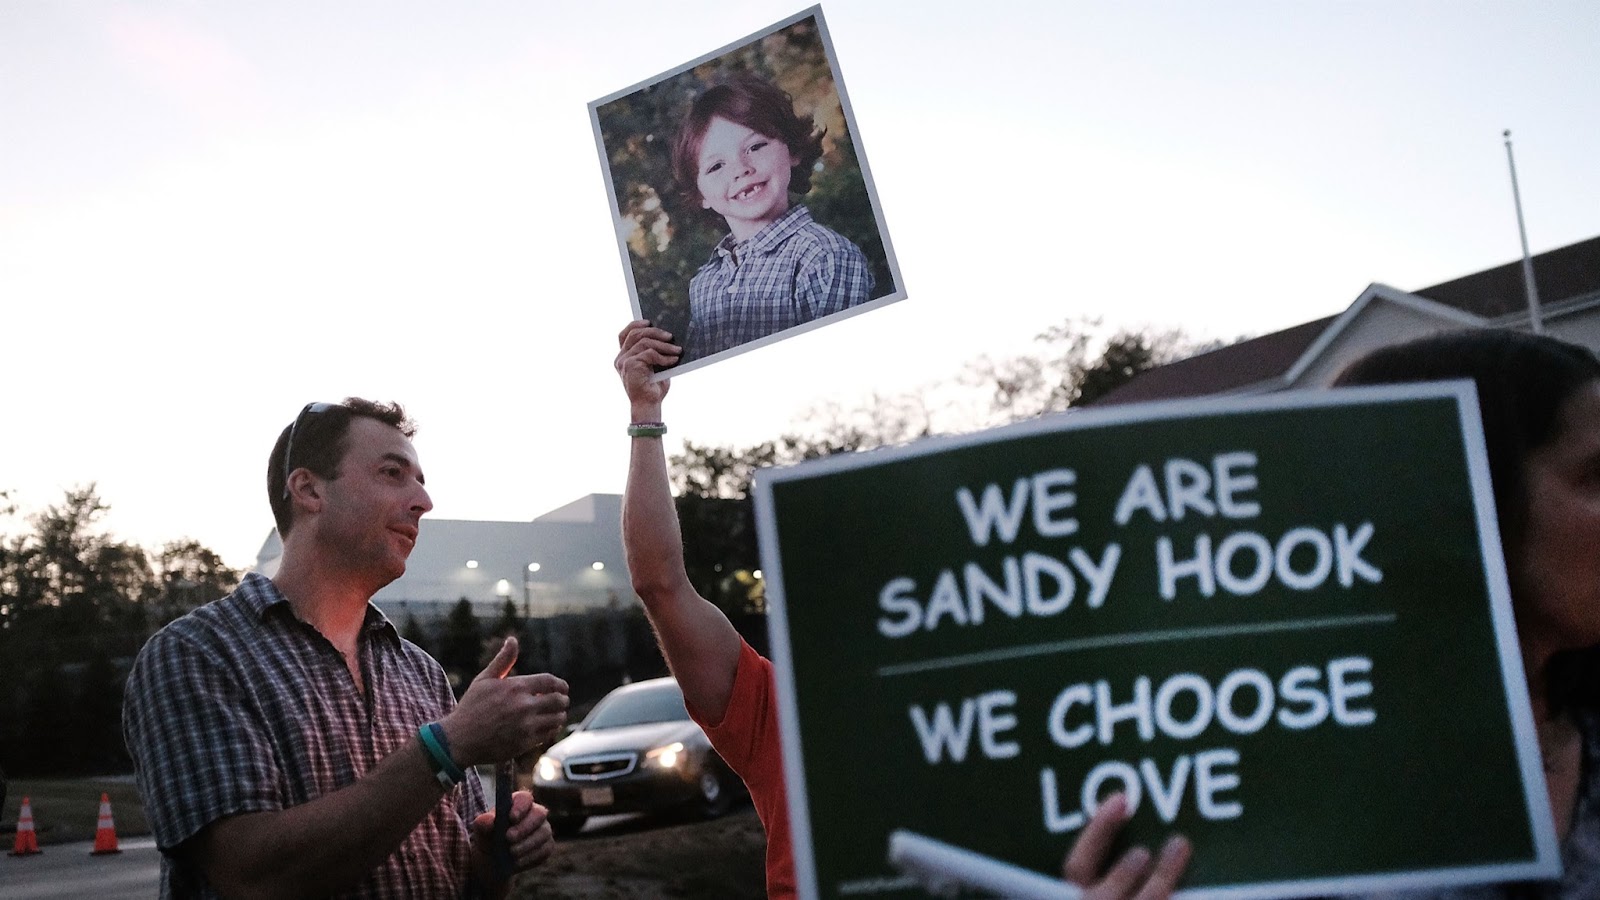 Sandy Hook survivors convey Uvalde hope despite their trauma